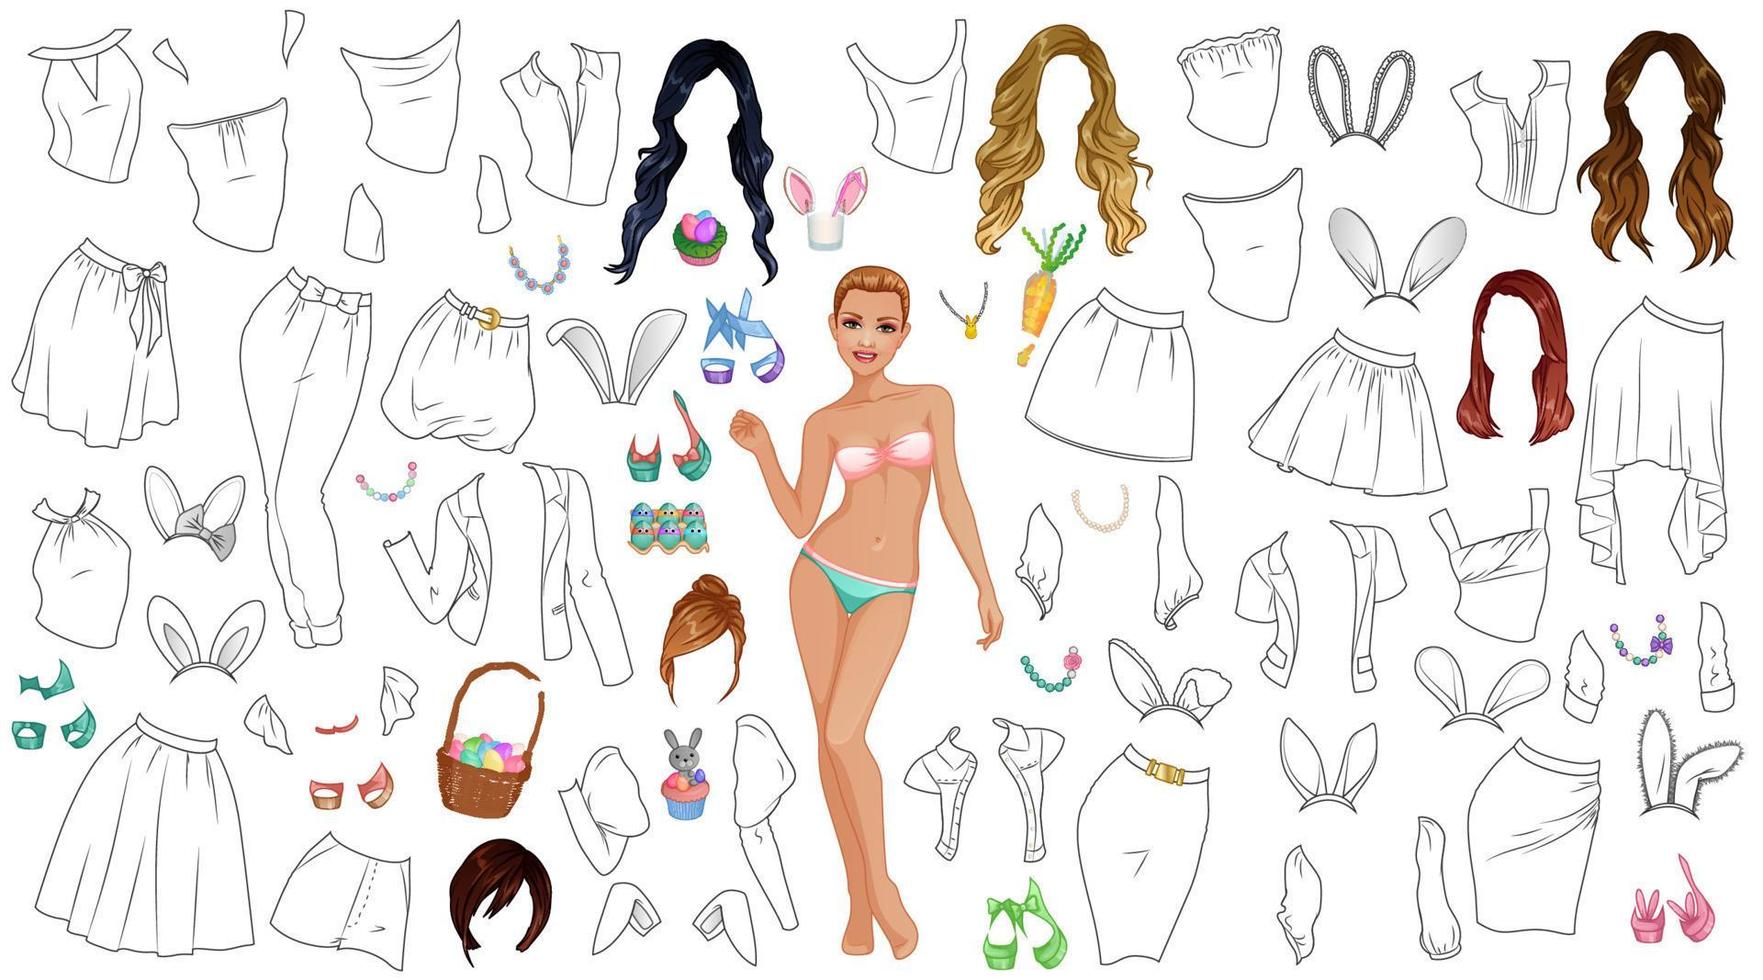 Pasen konijn kleur bladzijde papier pop met outfits, kapsels, schoenen, accessoires en konijn oren. vector illustratie